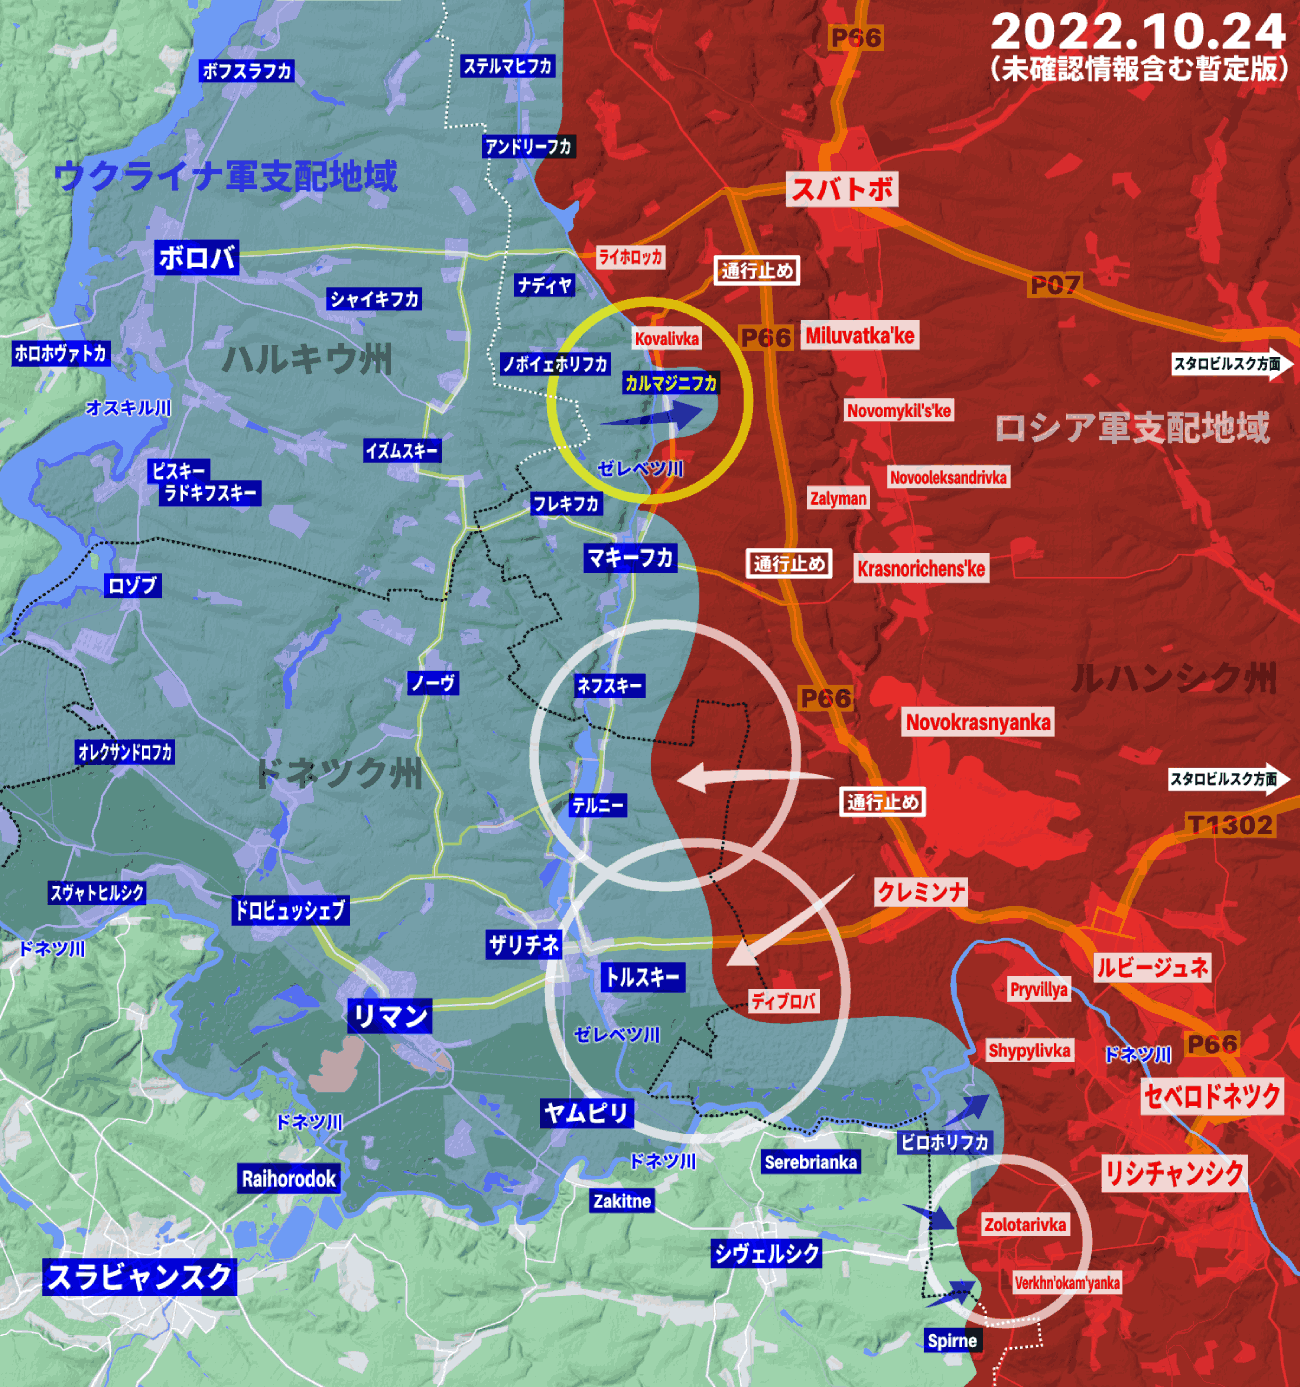 ウクライナ軍参謀本部、ドンバス地域で4つの拠点解放に成功したと発表